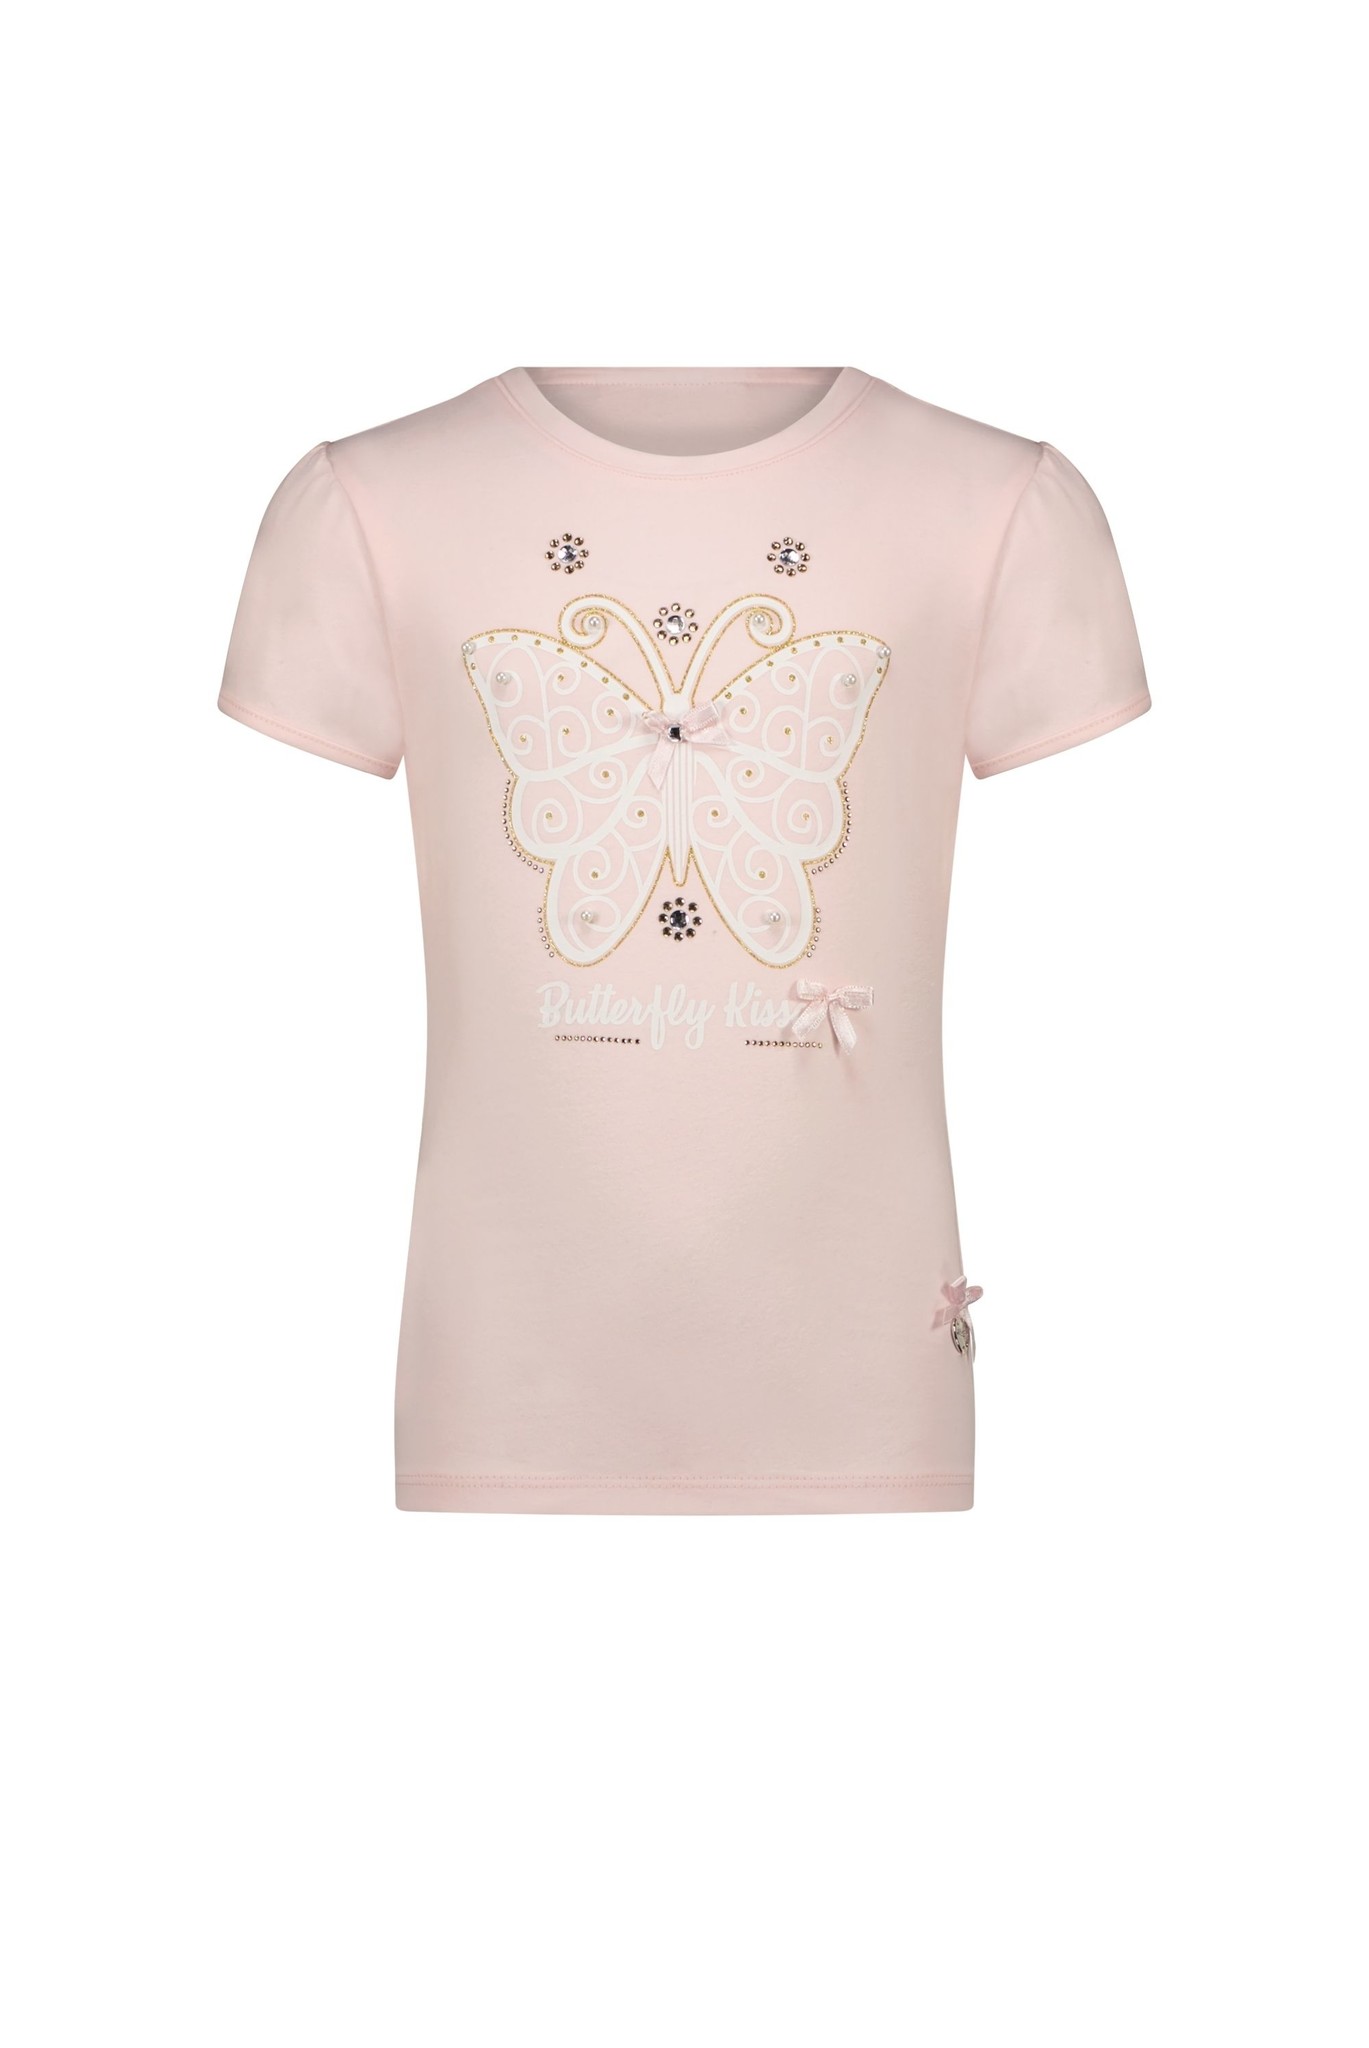 Le Chic Meisjes t-shirt vlinder - Nommy - Roze mist